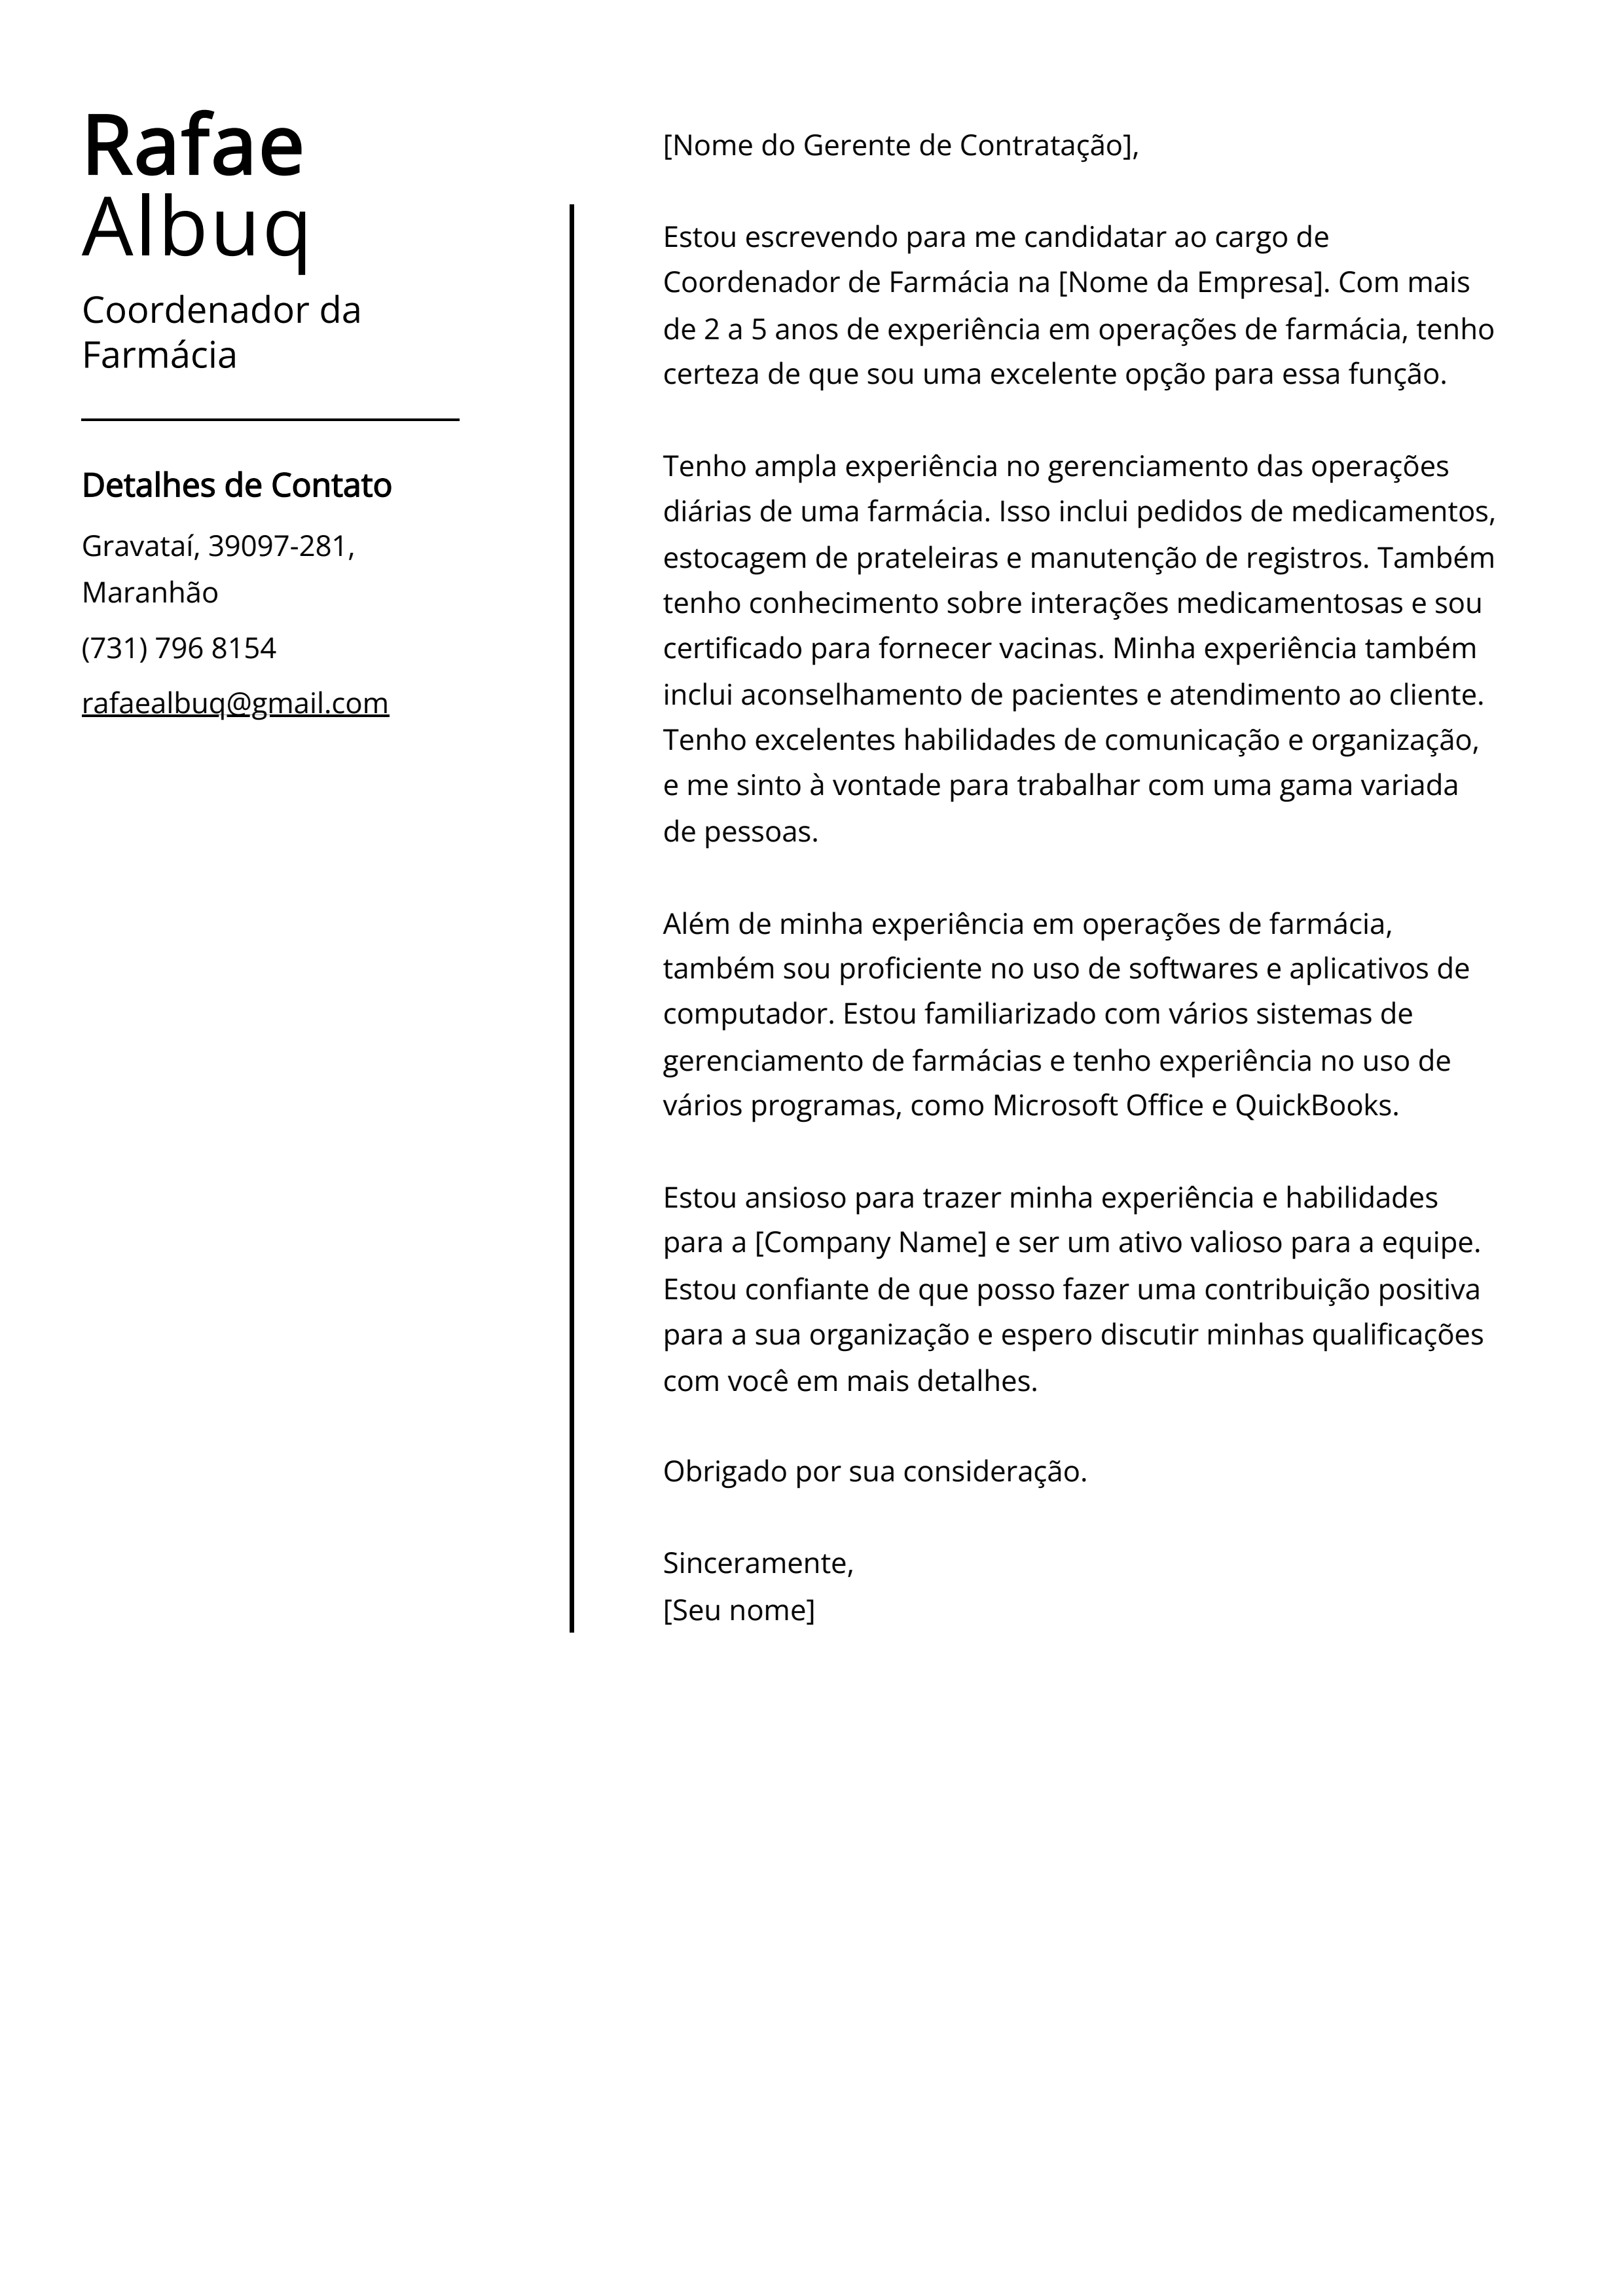 Exemplo de carta de apresentação do Coordenador da Farmácia